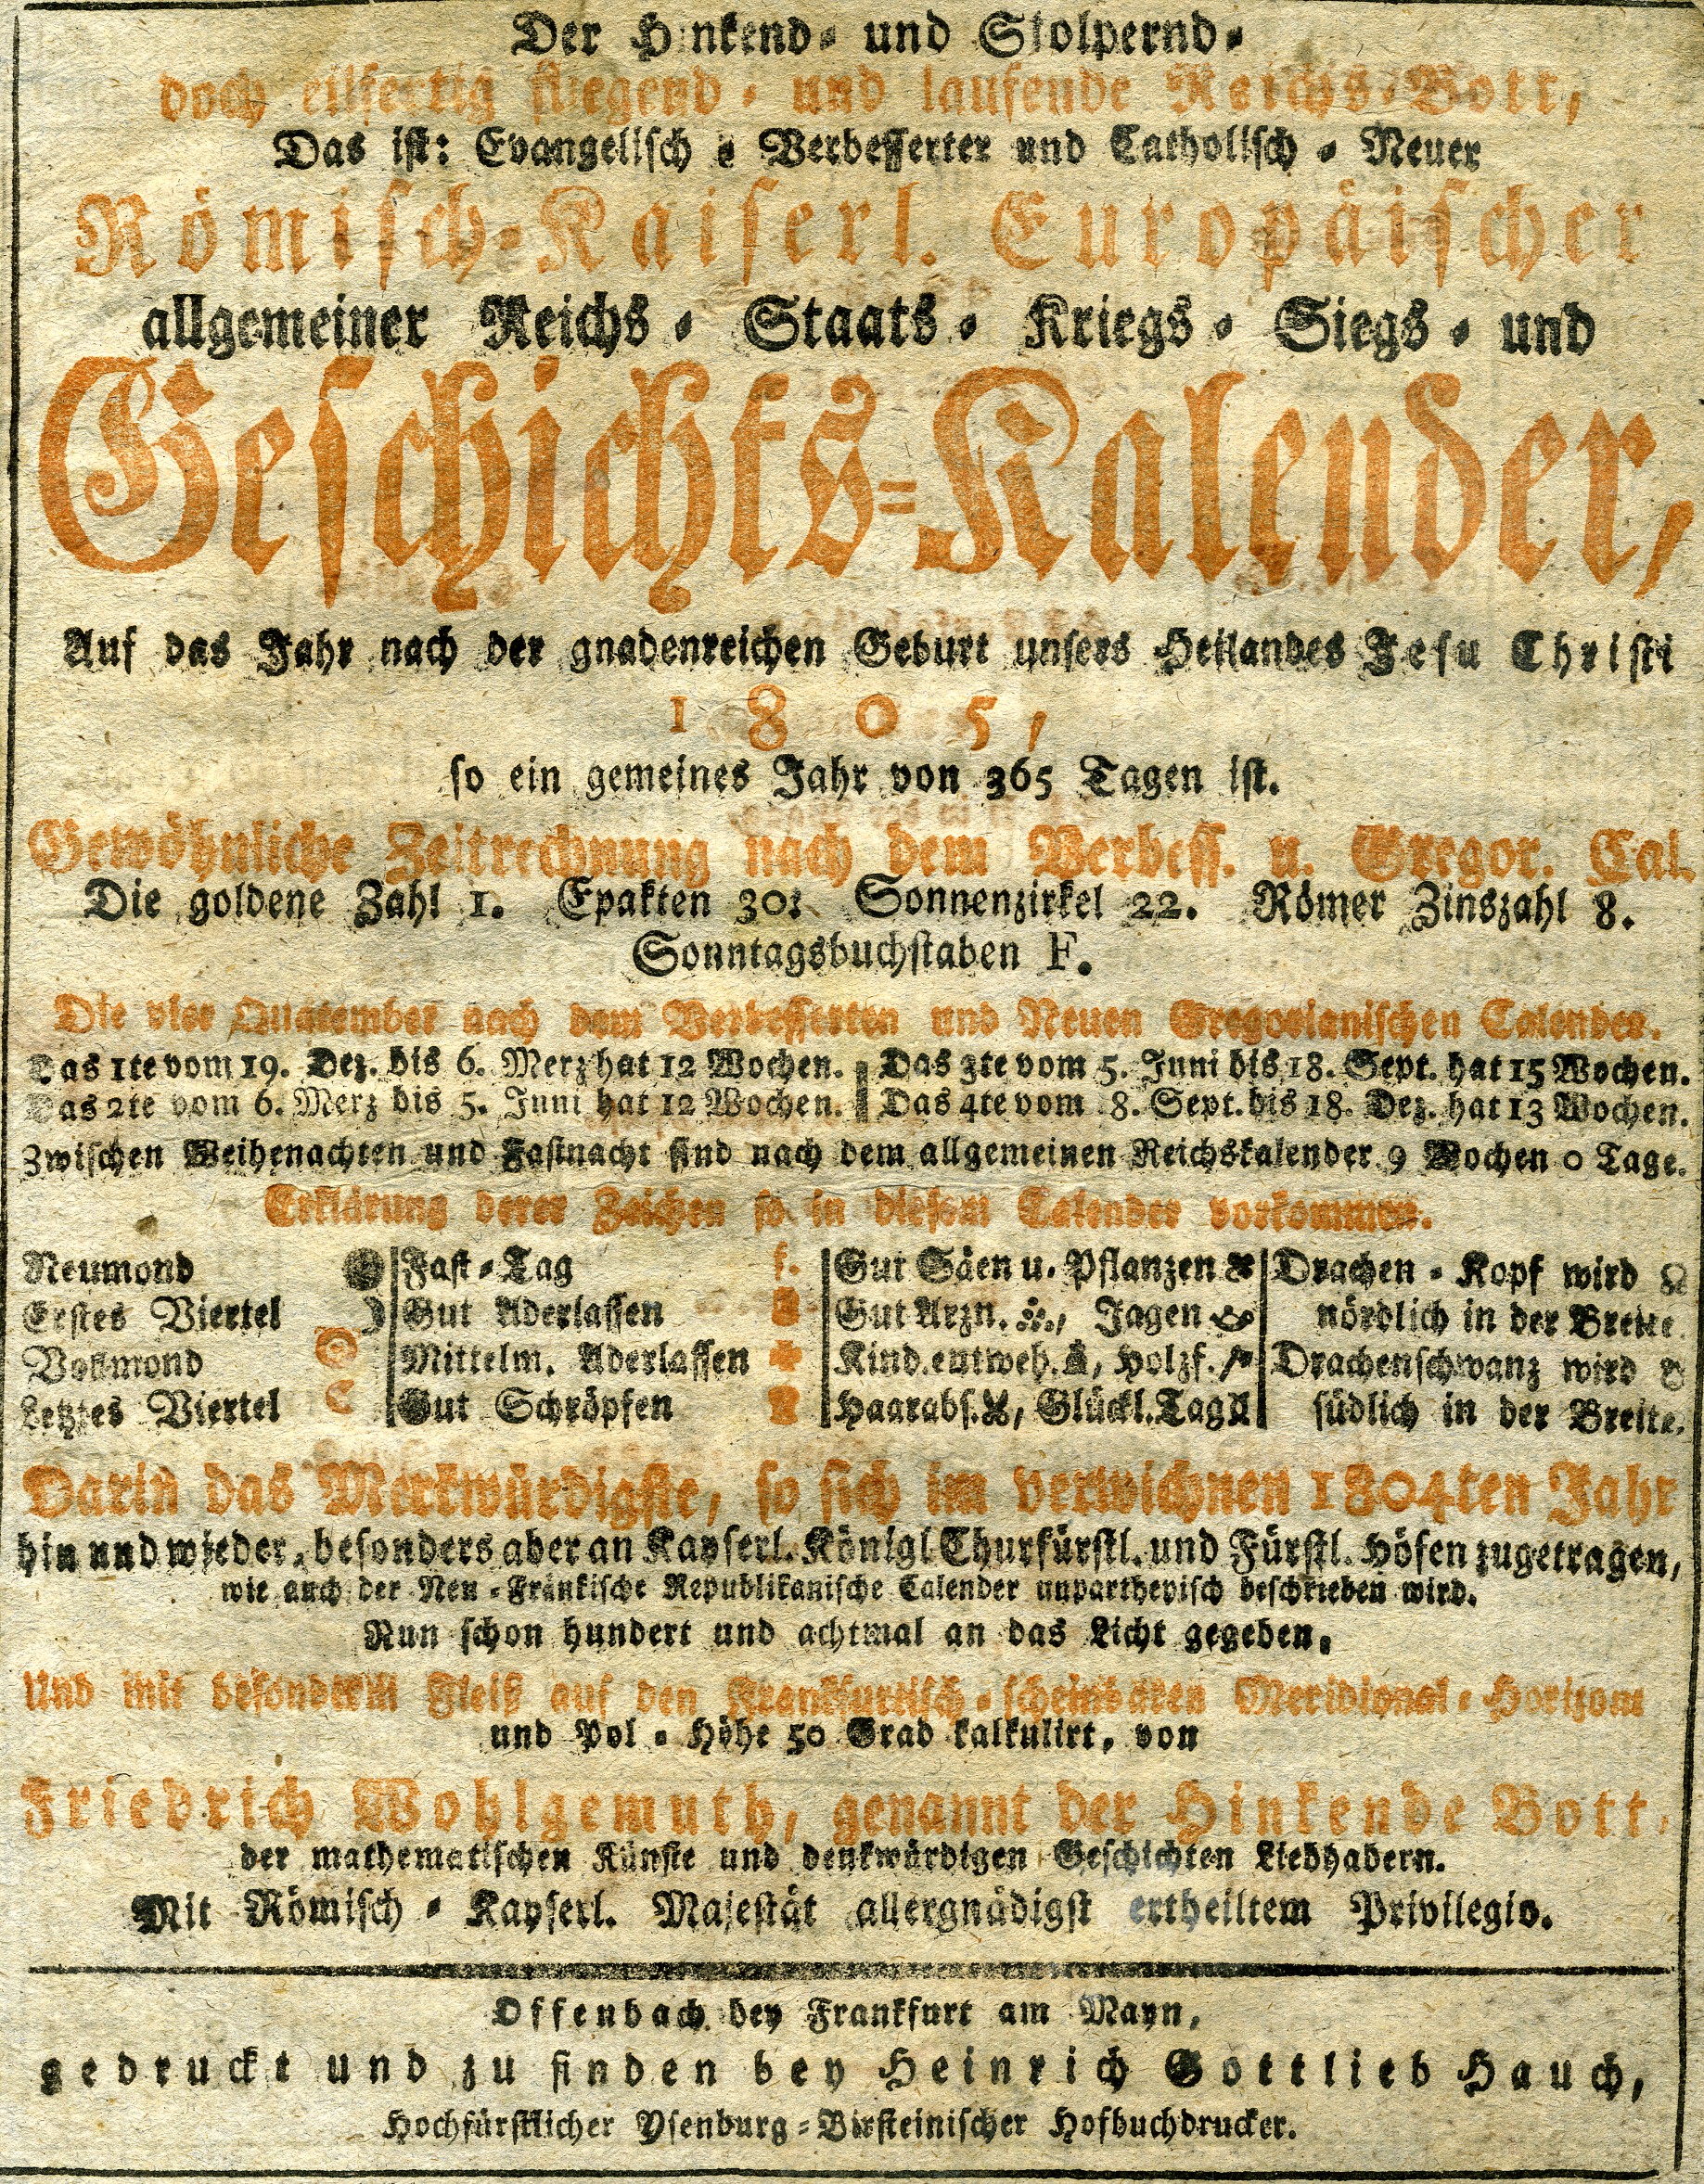 Der Hinkende Bote für das Jahr 1805 (Offenbach) (Historisches Museum der Pfalz, Speyer CC BY)